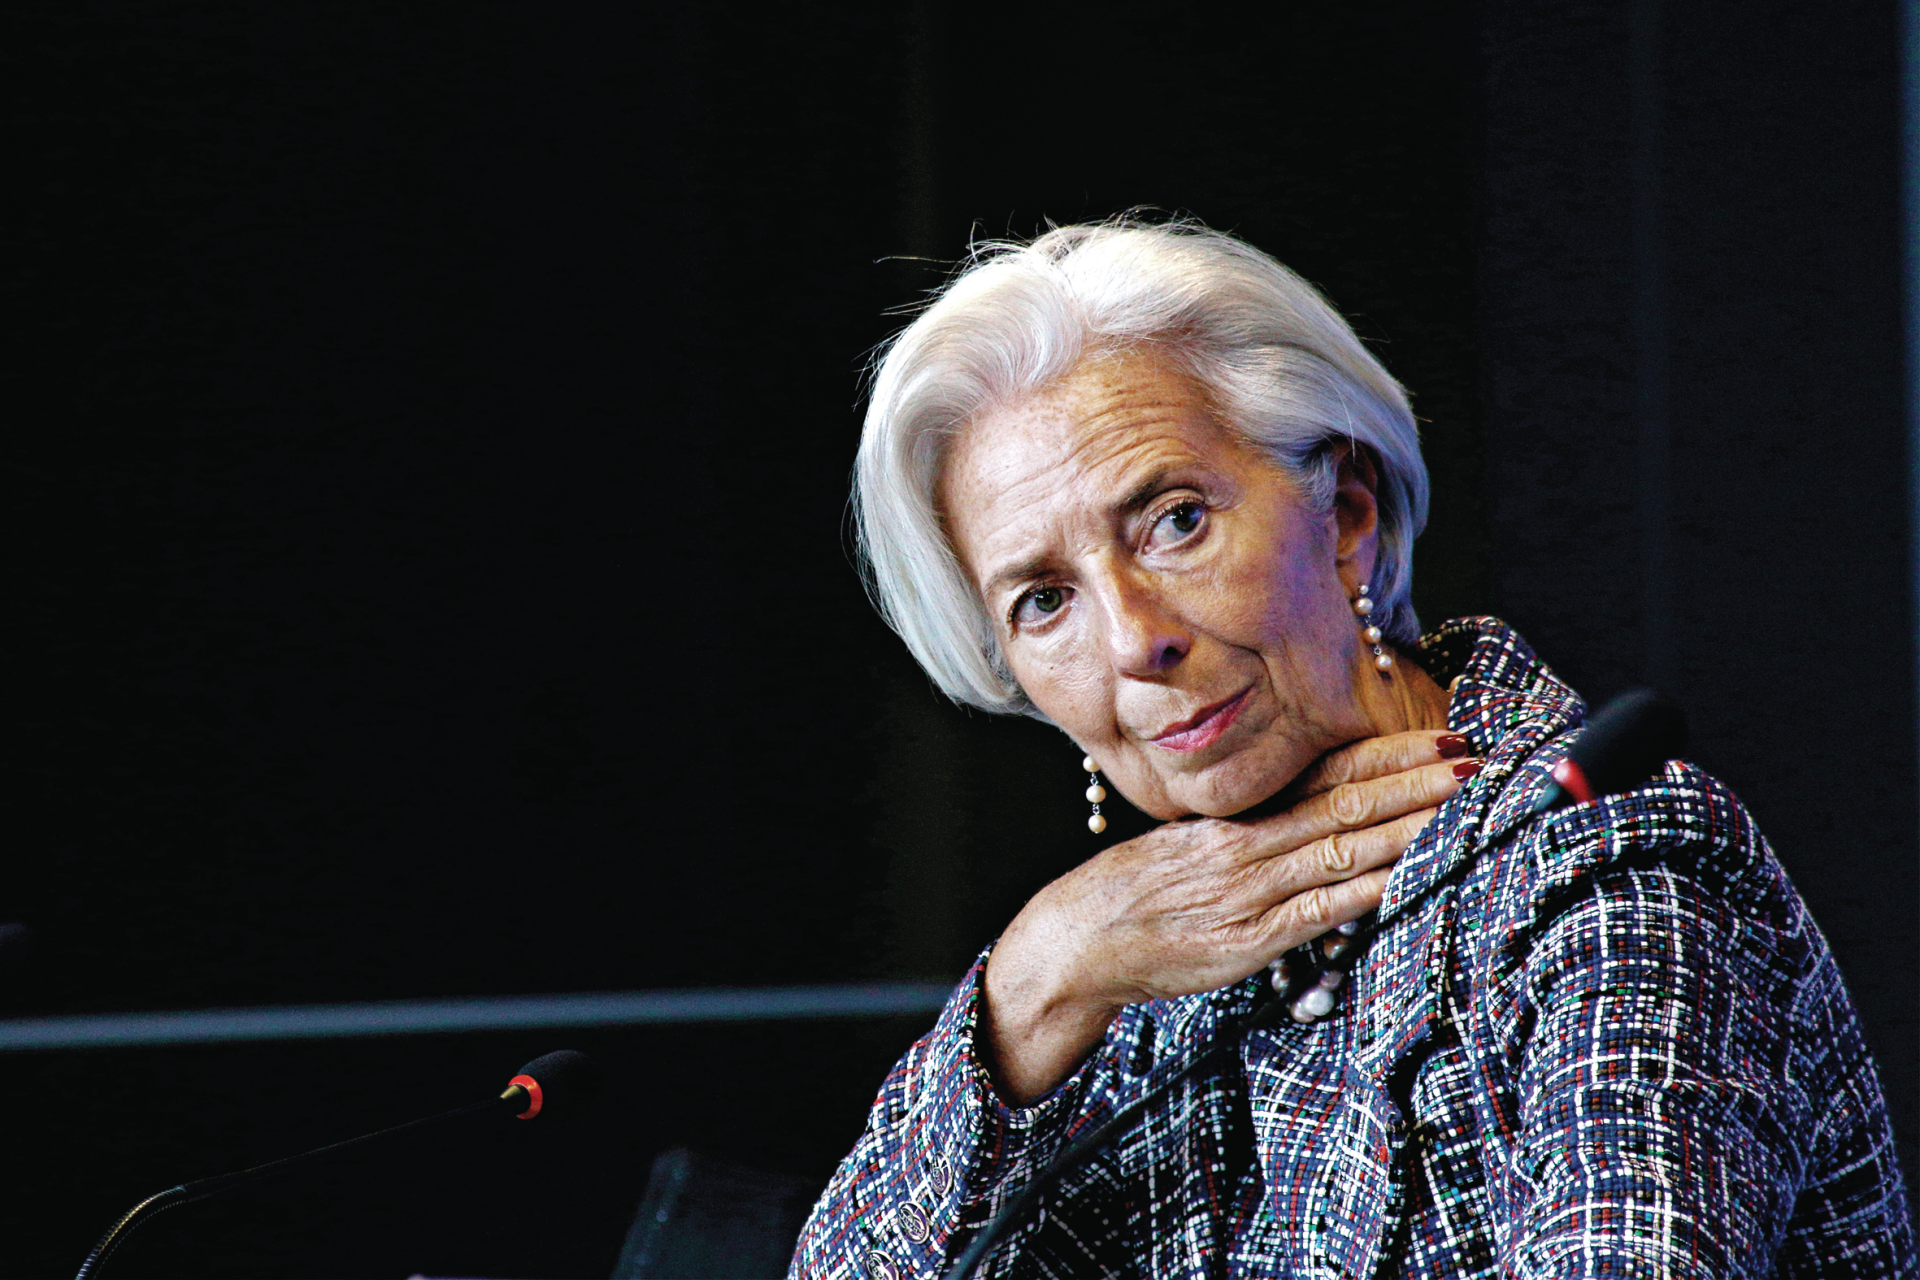 FMI. Controlo excessivo e falta de concorrência são preocupações